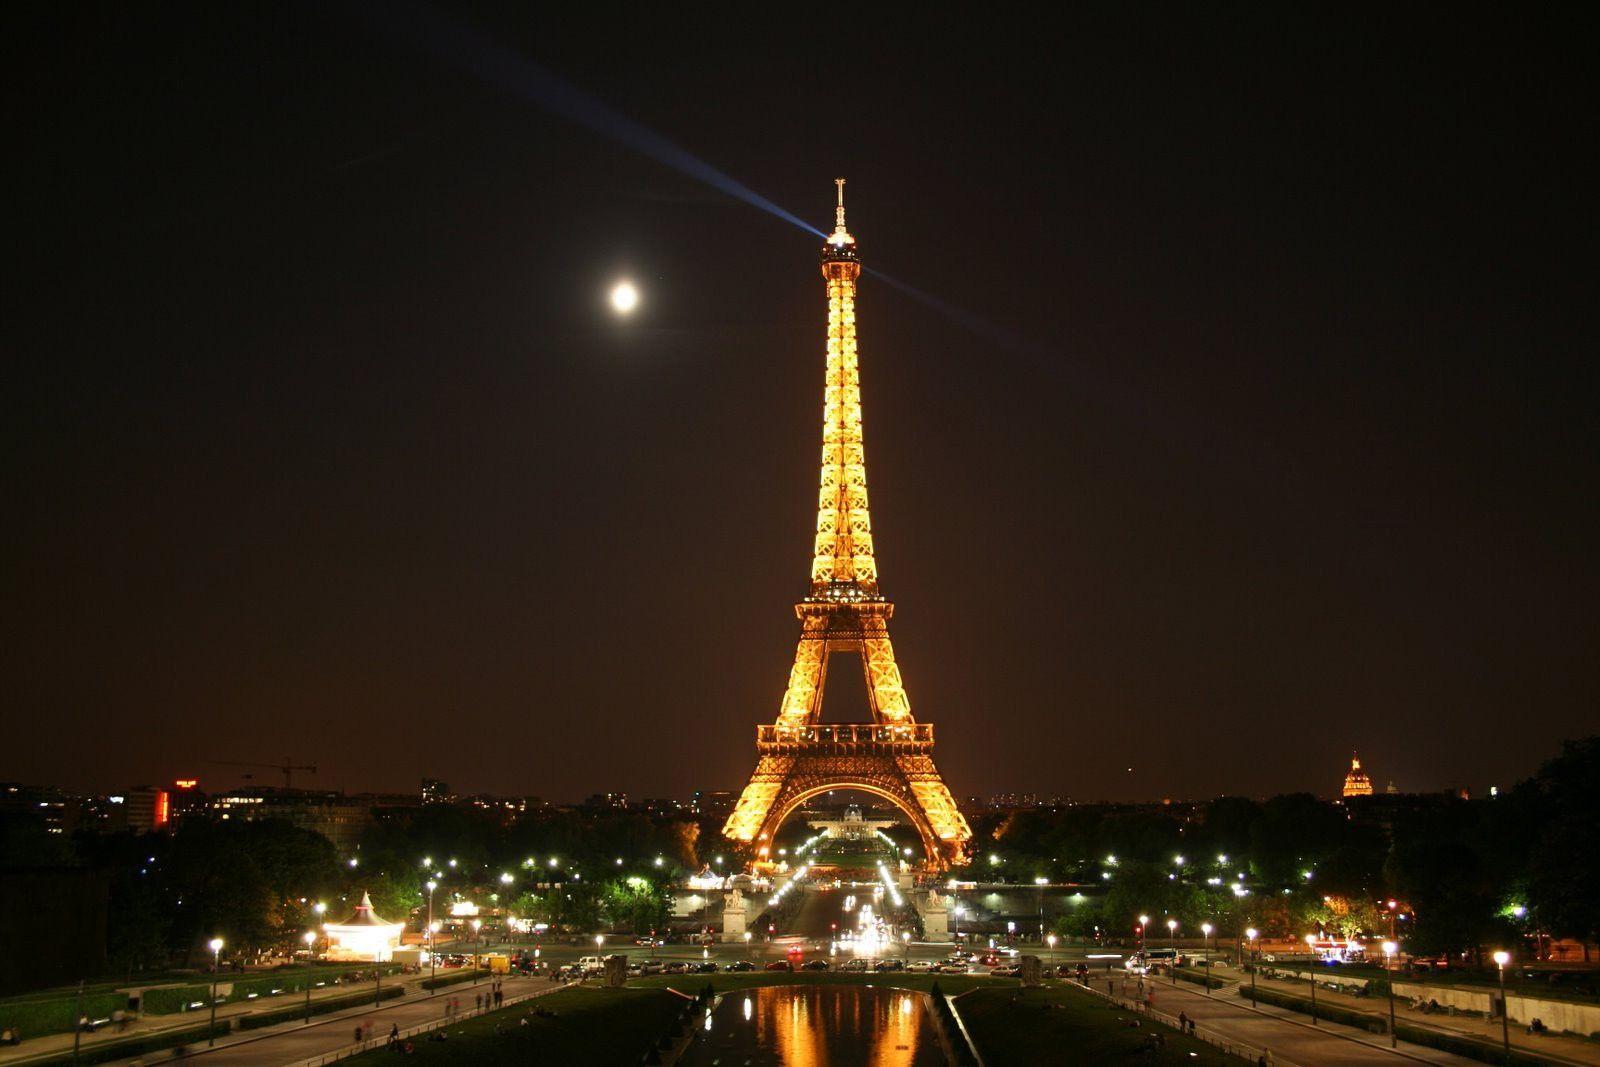 Torre Eiffel en la noche Fondos de pantalla - Fondo de pantalla Cueva